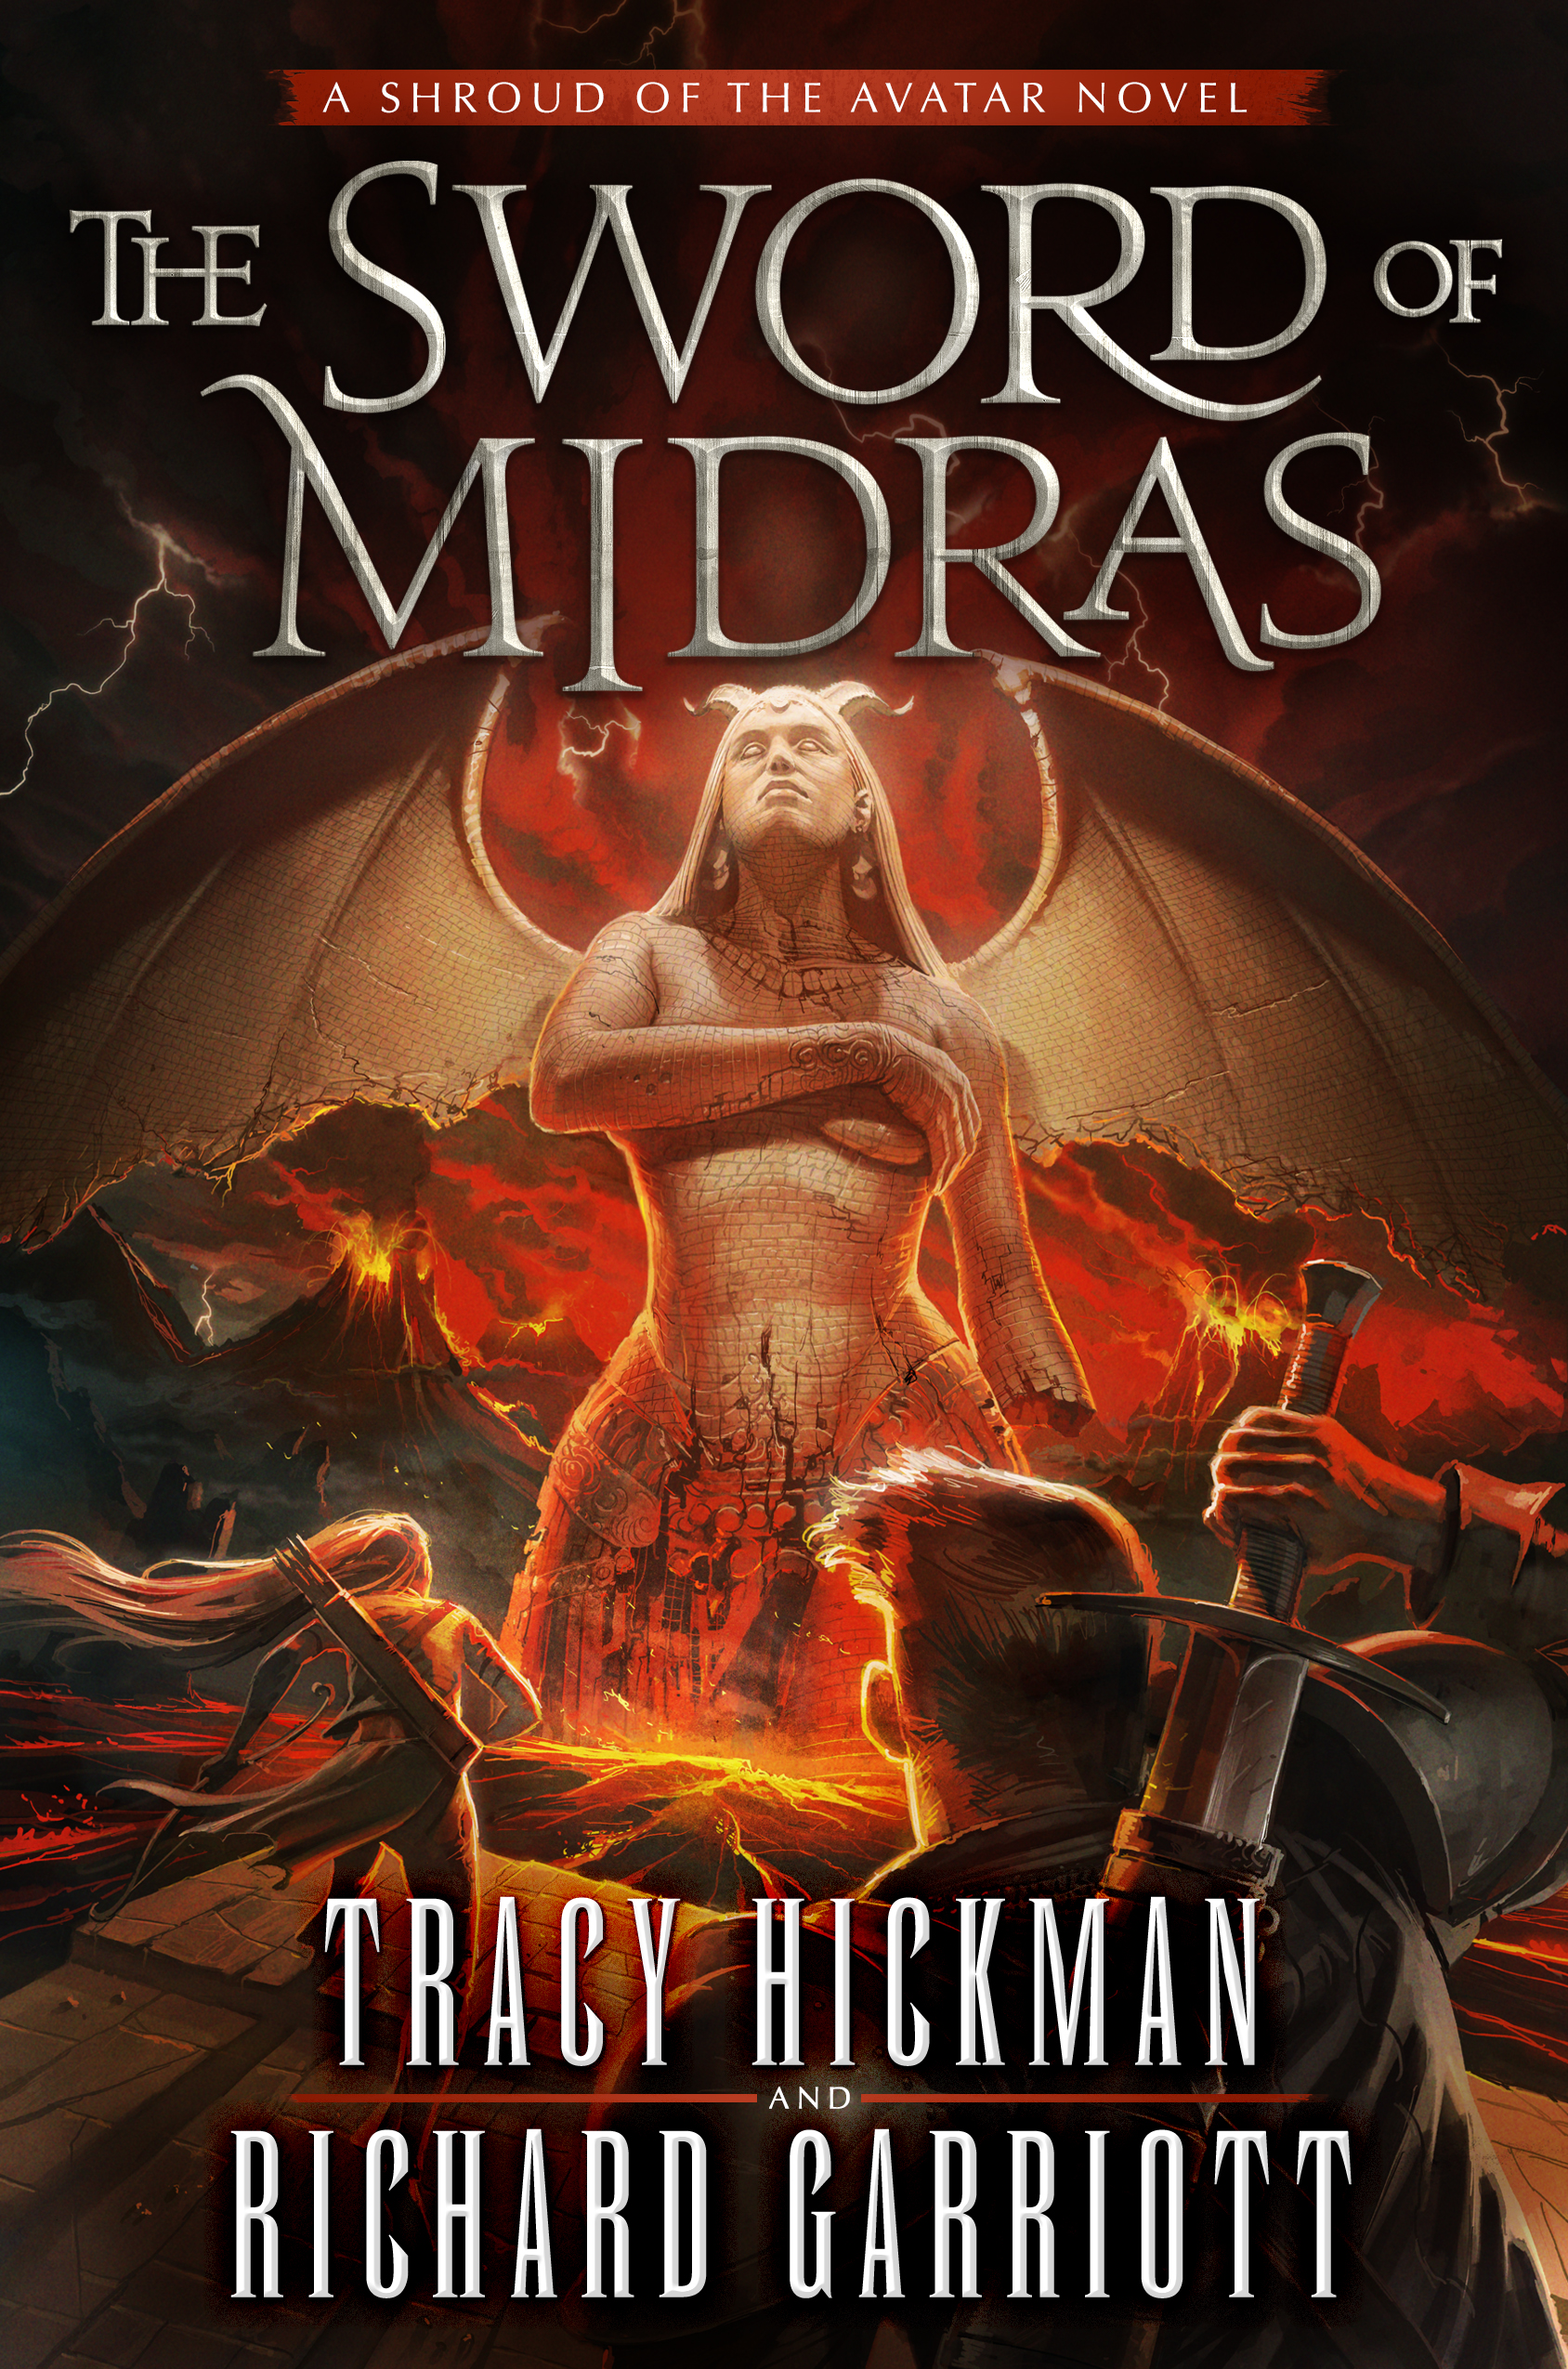 The Sword of Midras : A Shroud of the Avatar Novel by Tracy Hickman, Richard Garriott